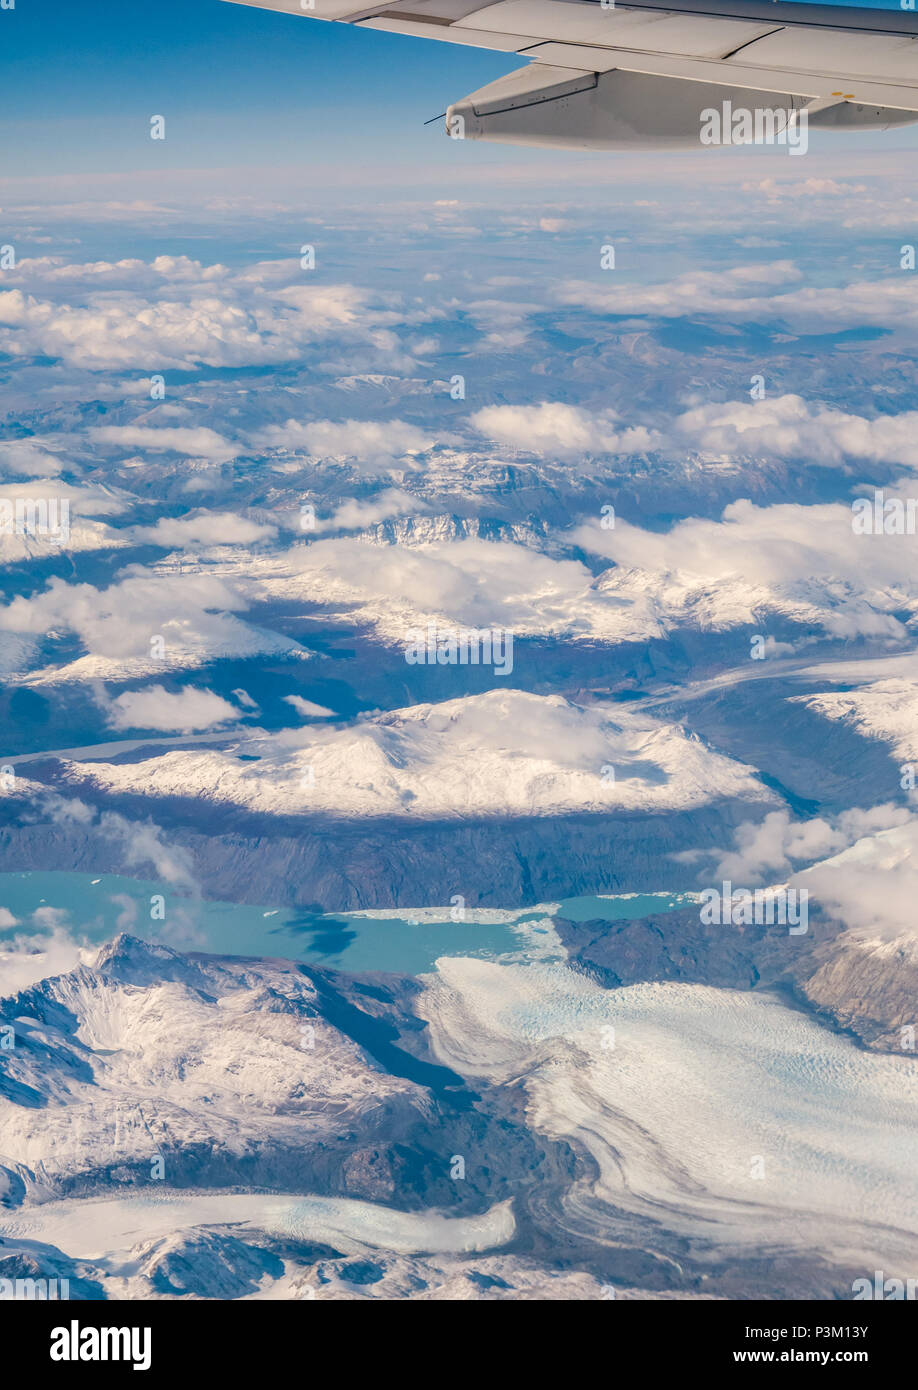 Vista desde la ventana del avión de los Andes cubiertos de nieve, con lagos, glaciares y icebergs, Campo de Hielo Patagónico Sur, Patagonia, Chile Foto de stock